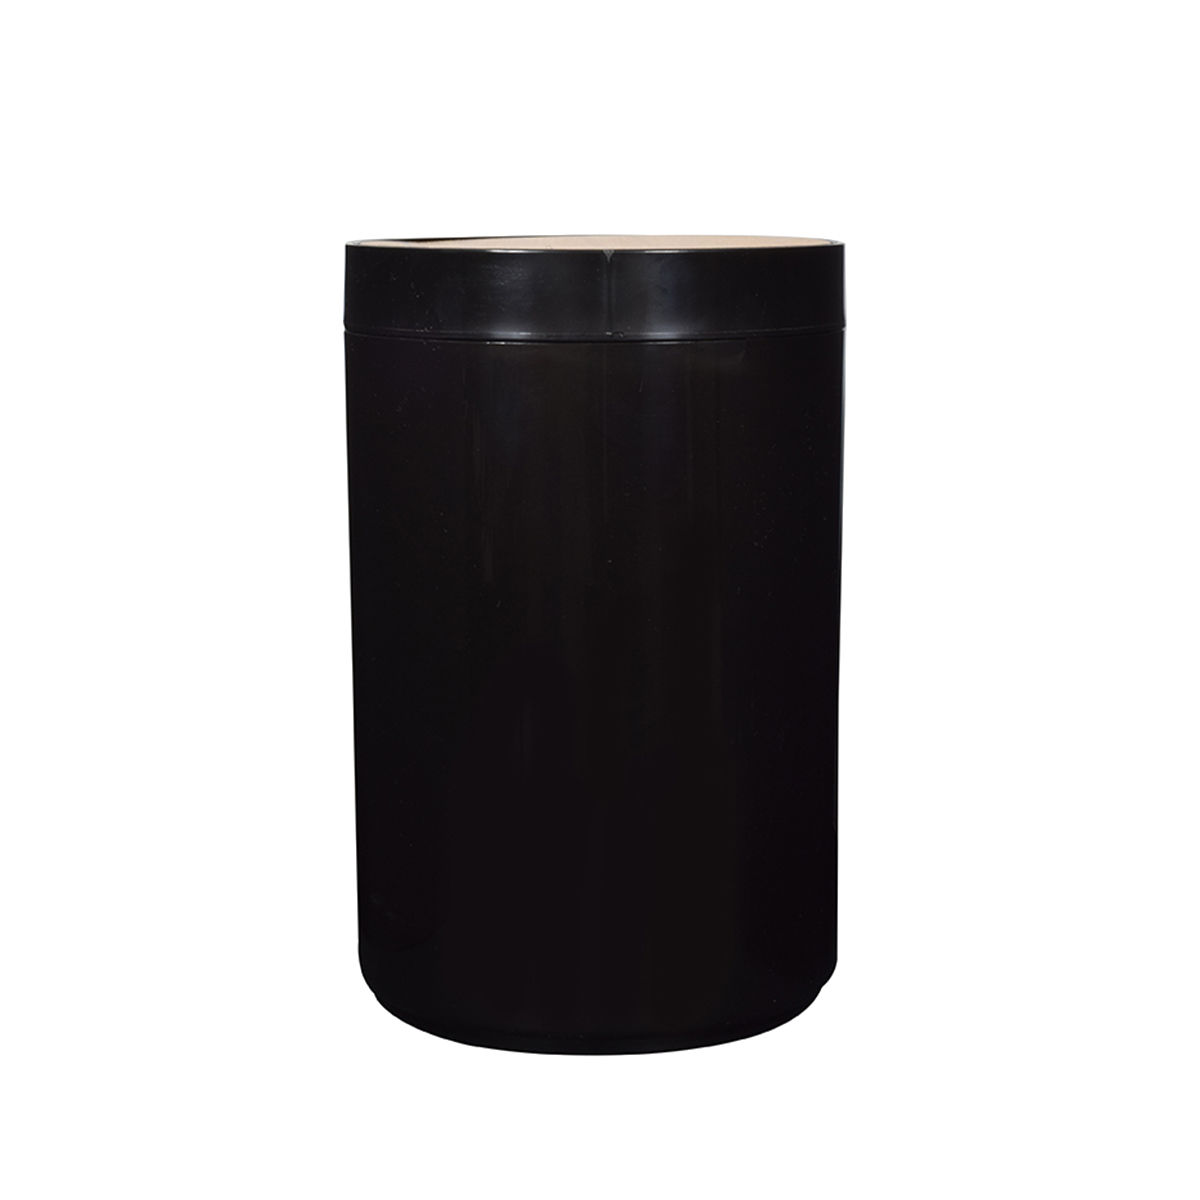 Καλάθι Απορριμάτων Πλαστικό-Bamboo Μαύρο Estia 5lt 02-3876 (Υλικό: Πλαστικό, Χρώμα: Μαύρο) - estia - 02-3876 146507